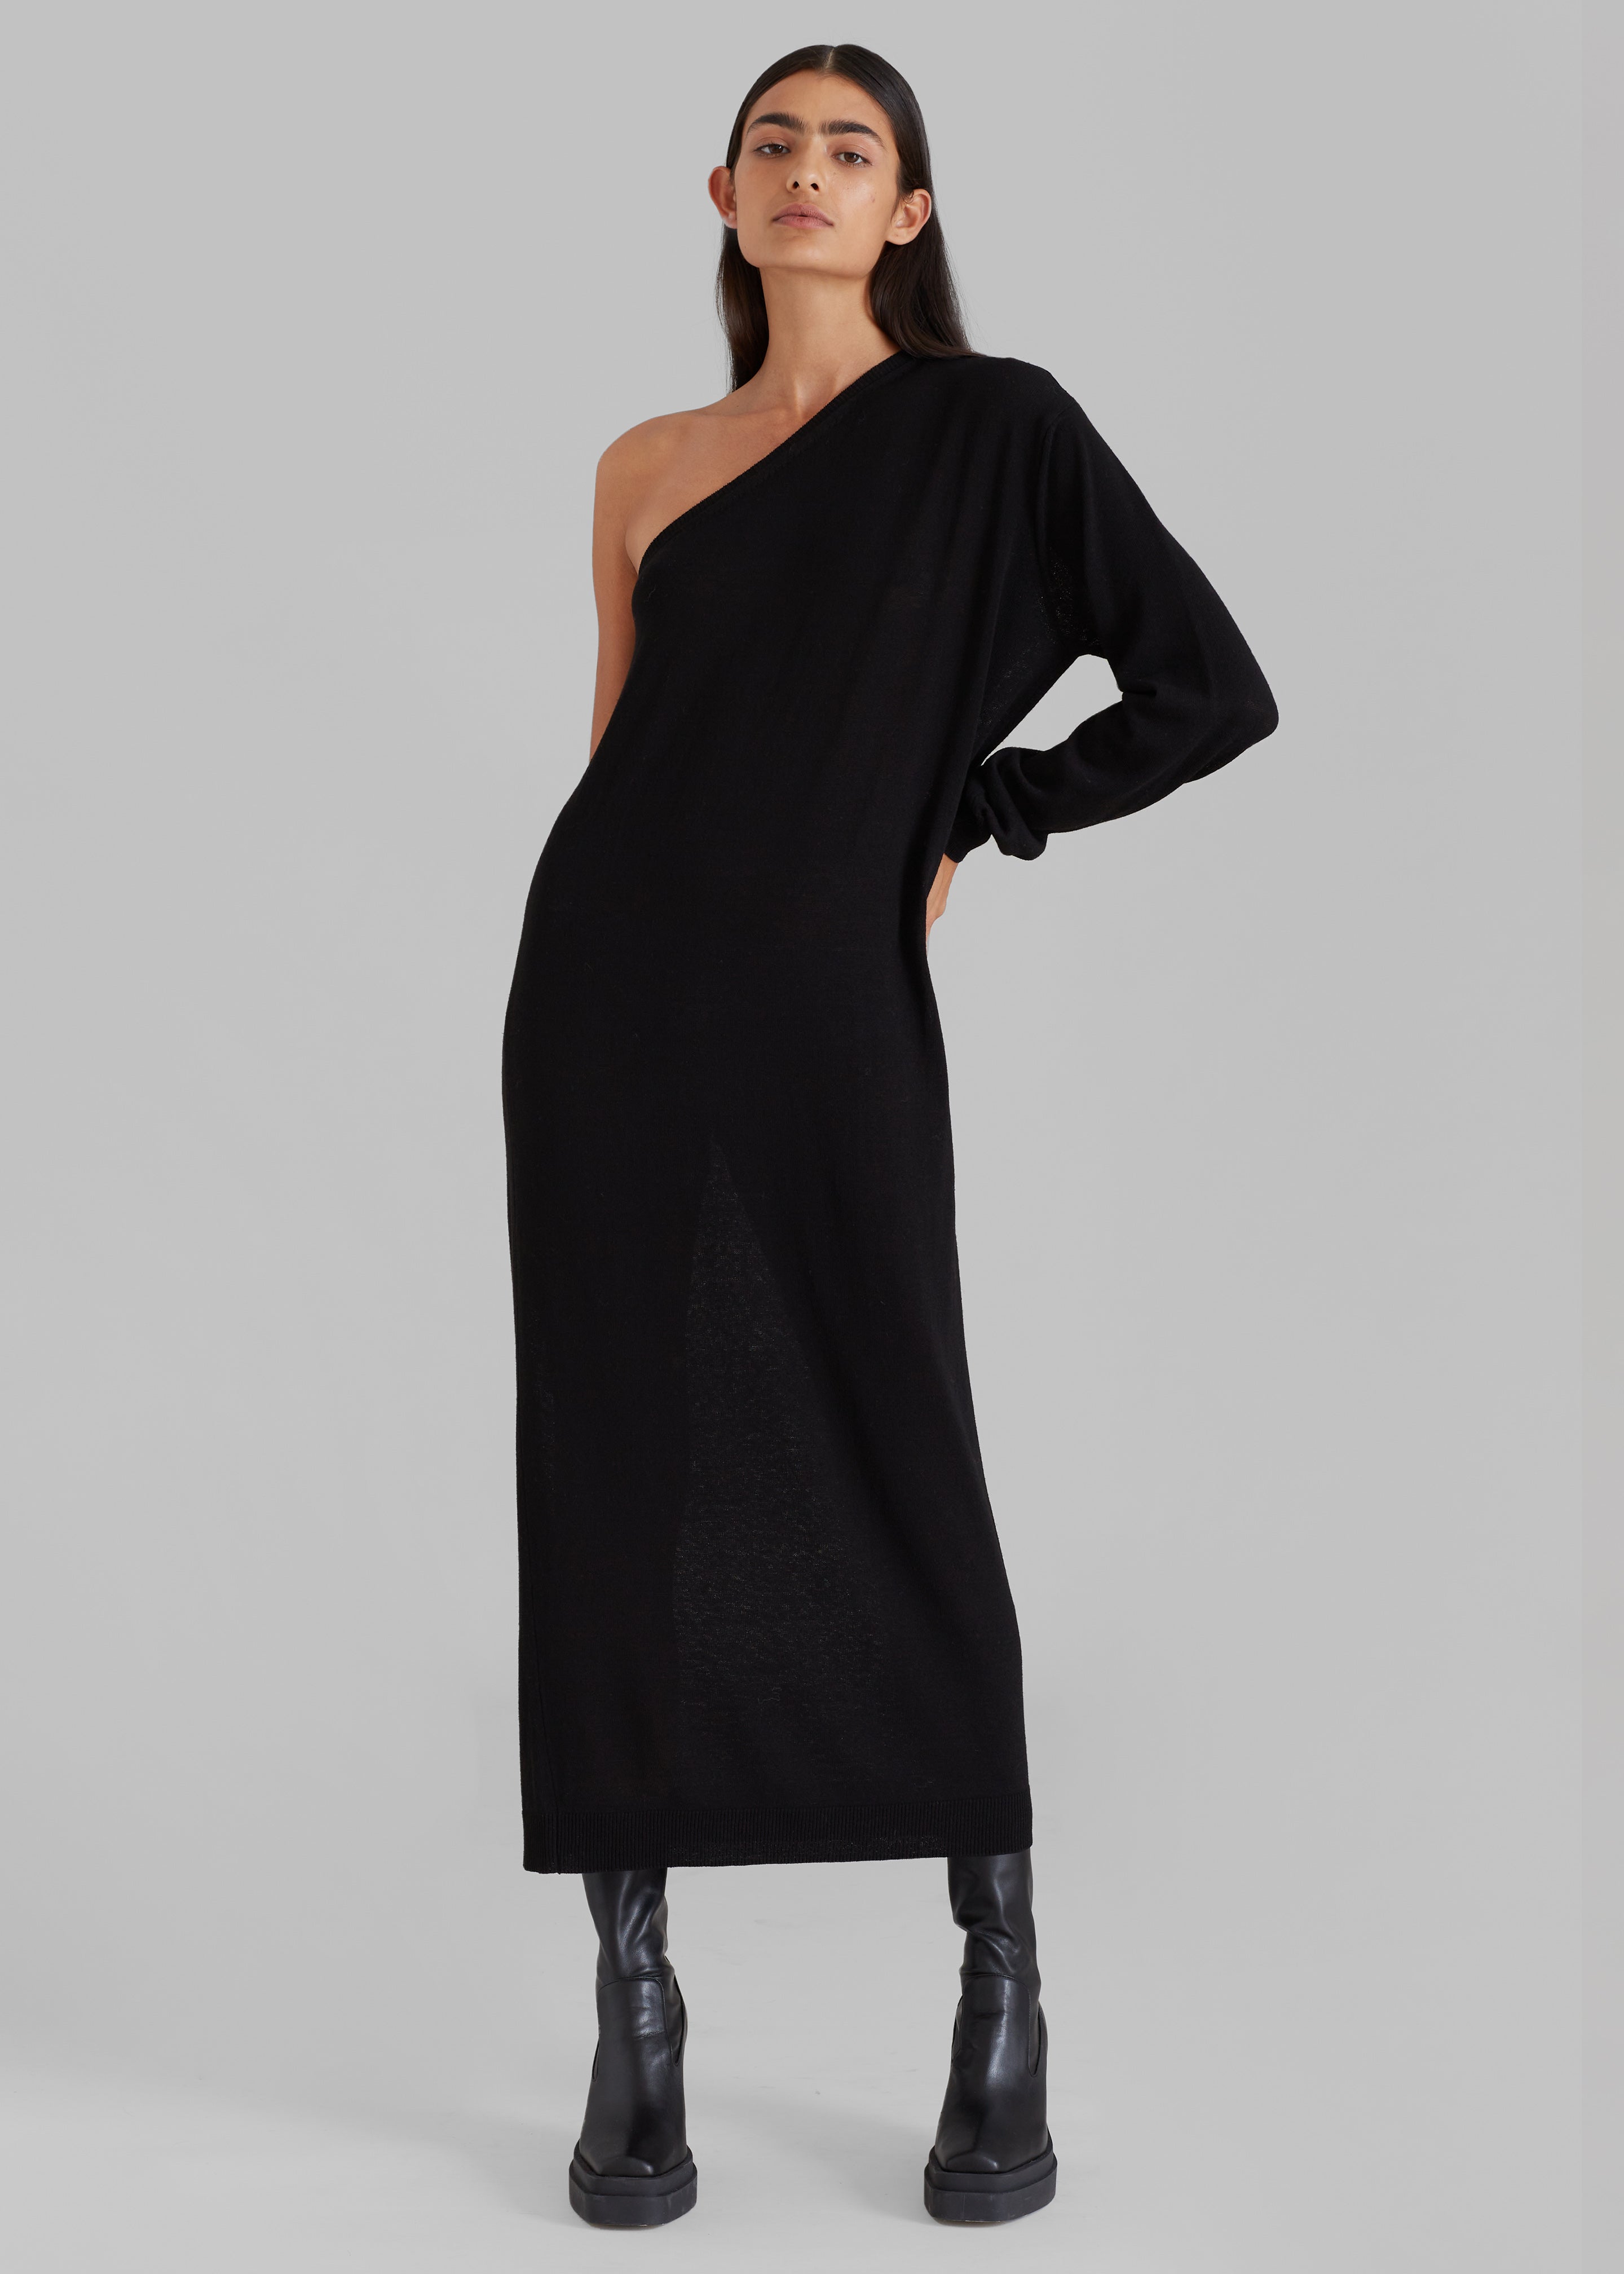 Lina One Shoulder Loose Knit Dress - Black – The Frankie Shop